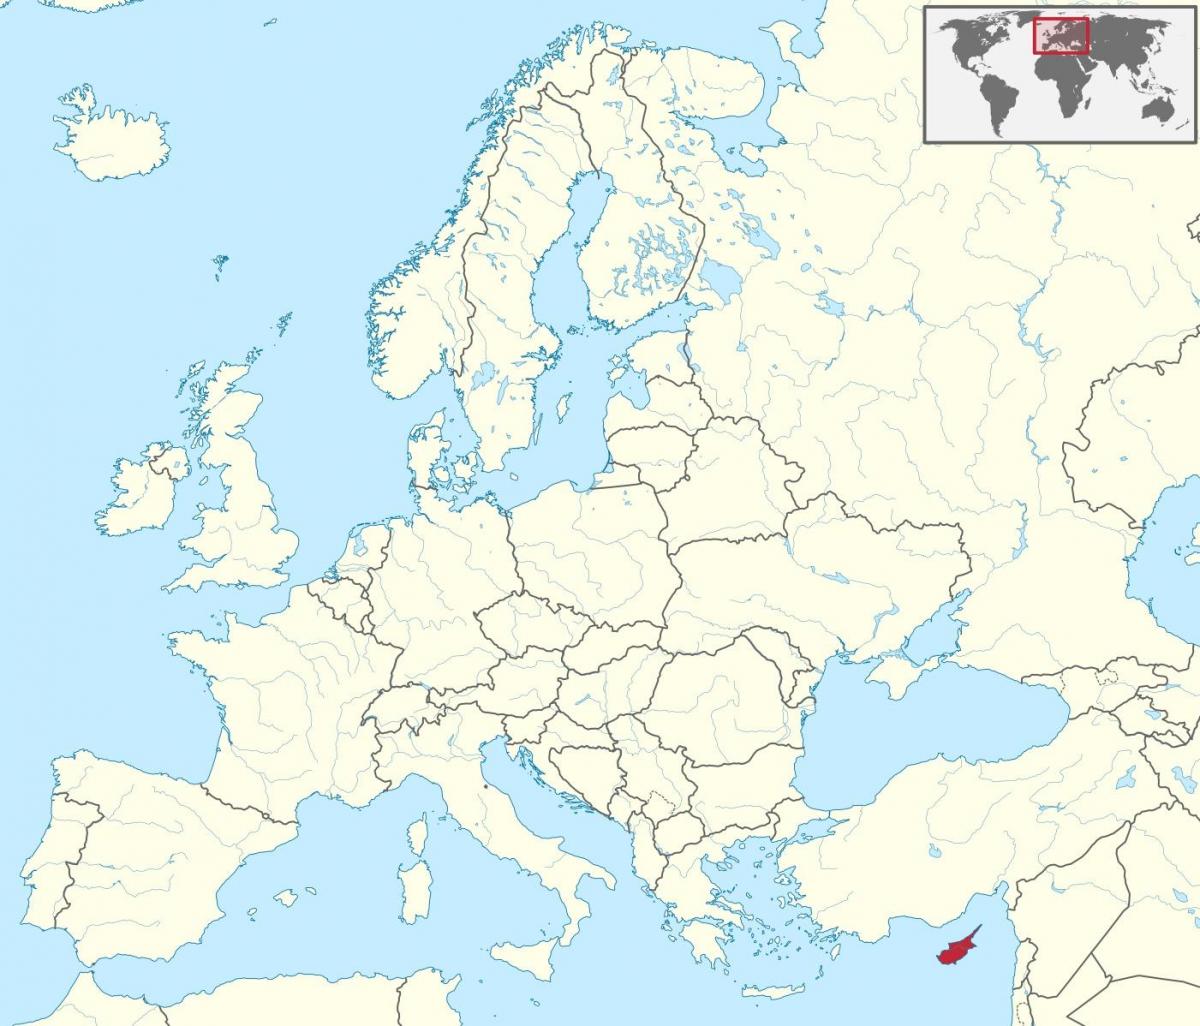 Siprus peta di dunia